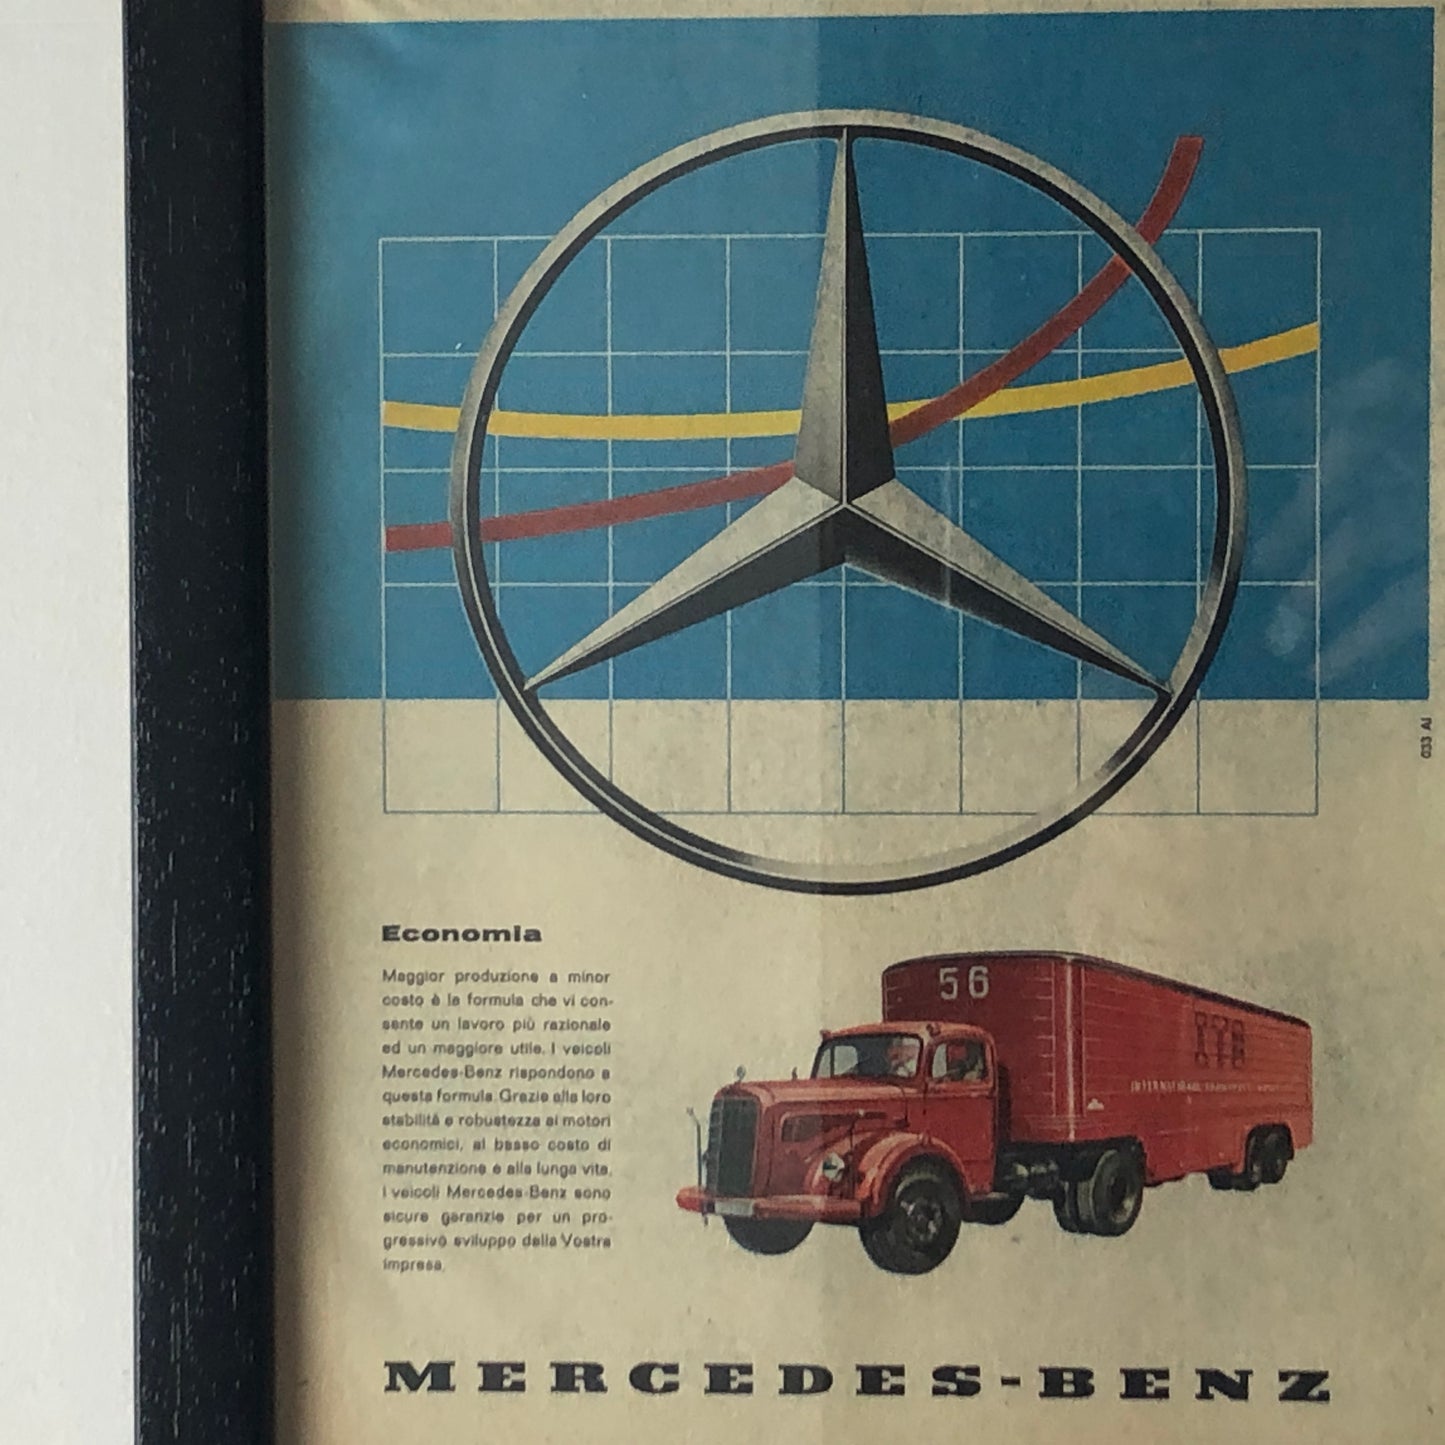 Mercedes-Benz, Pubblicità Anno 1960 Economia Mercedes-Benz Truck con Didascalia in Italiano